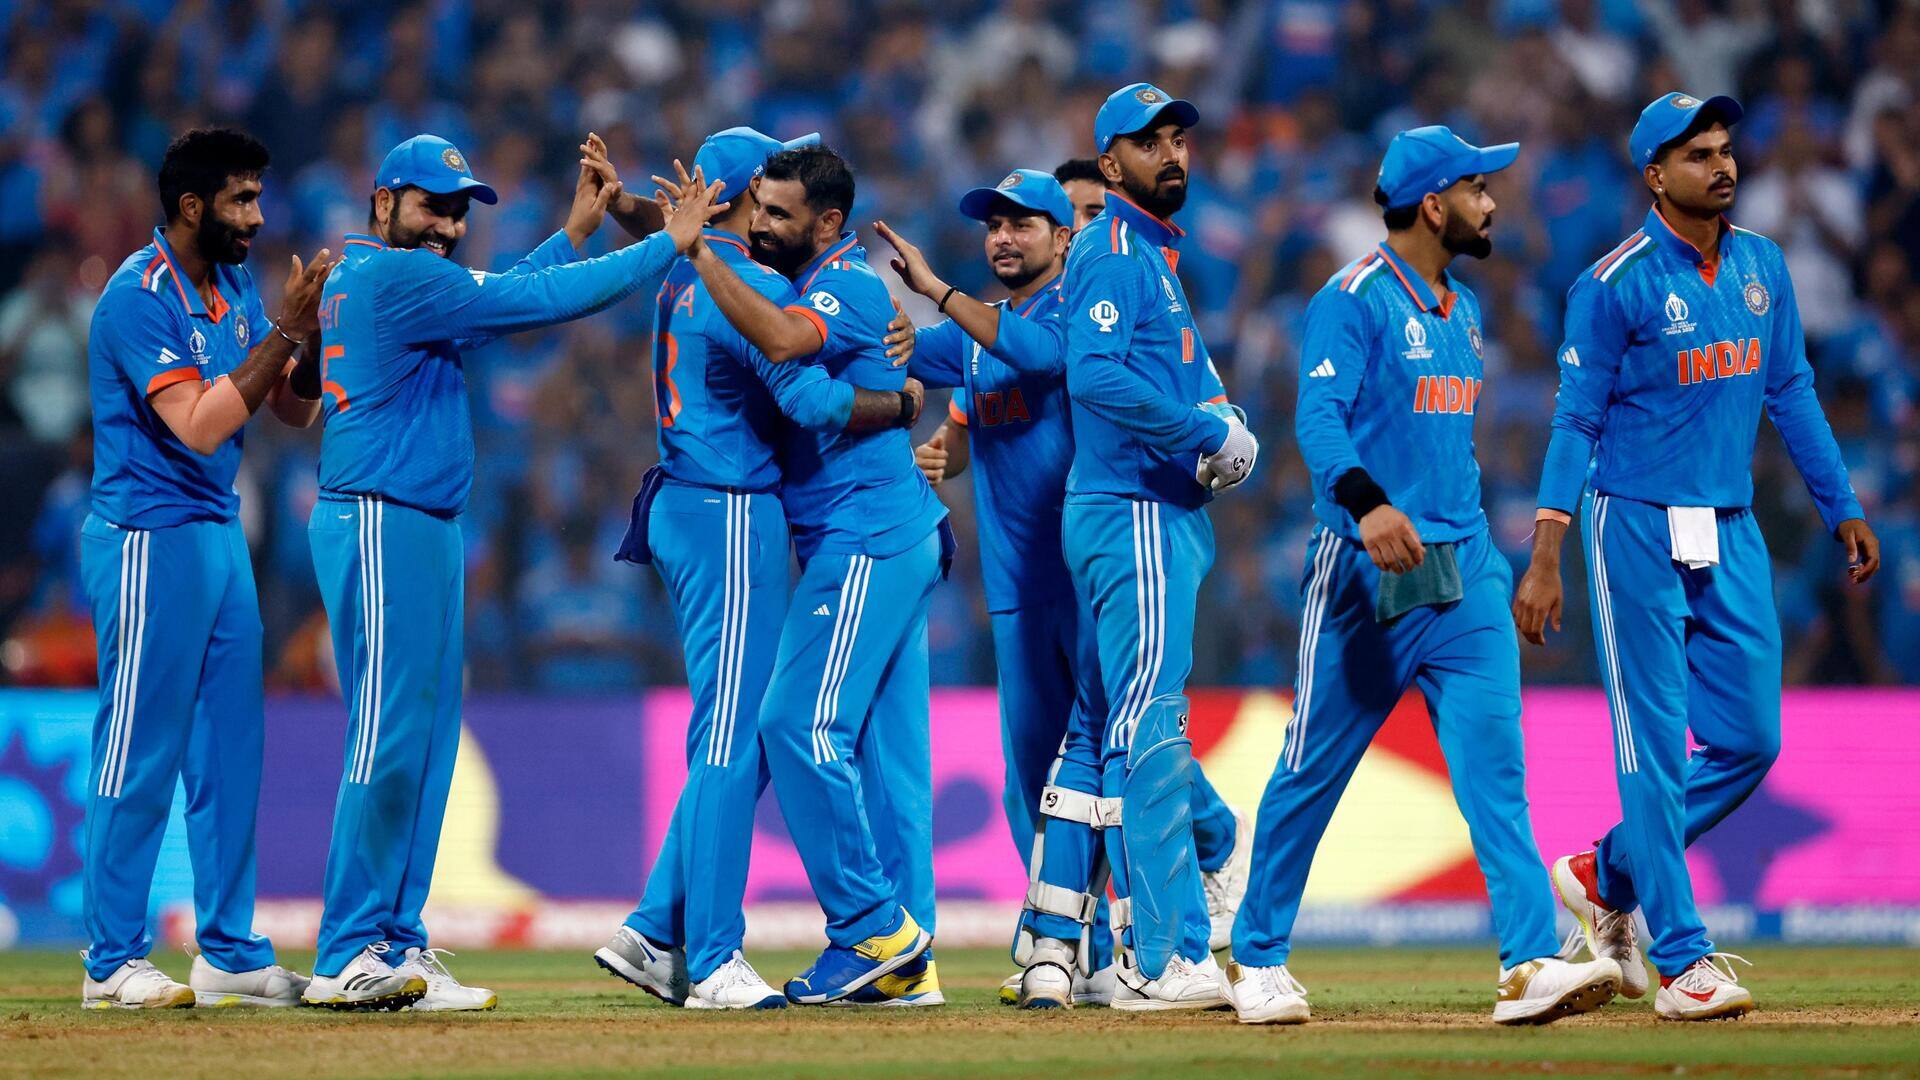 विश्व कप का फाइनल मुंबई या कोलकाता में होता तो भारत ही जीतता- ममता बनर्जी